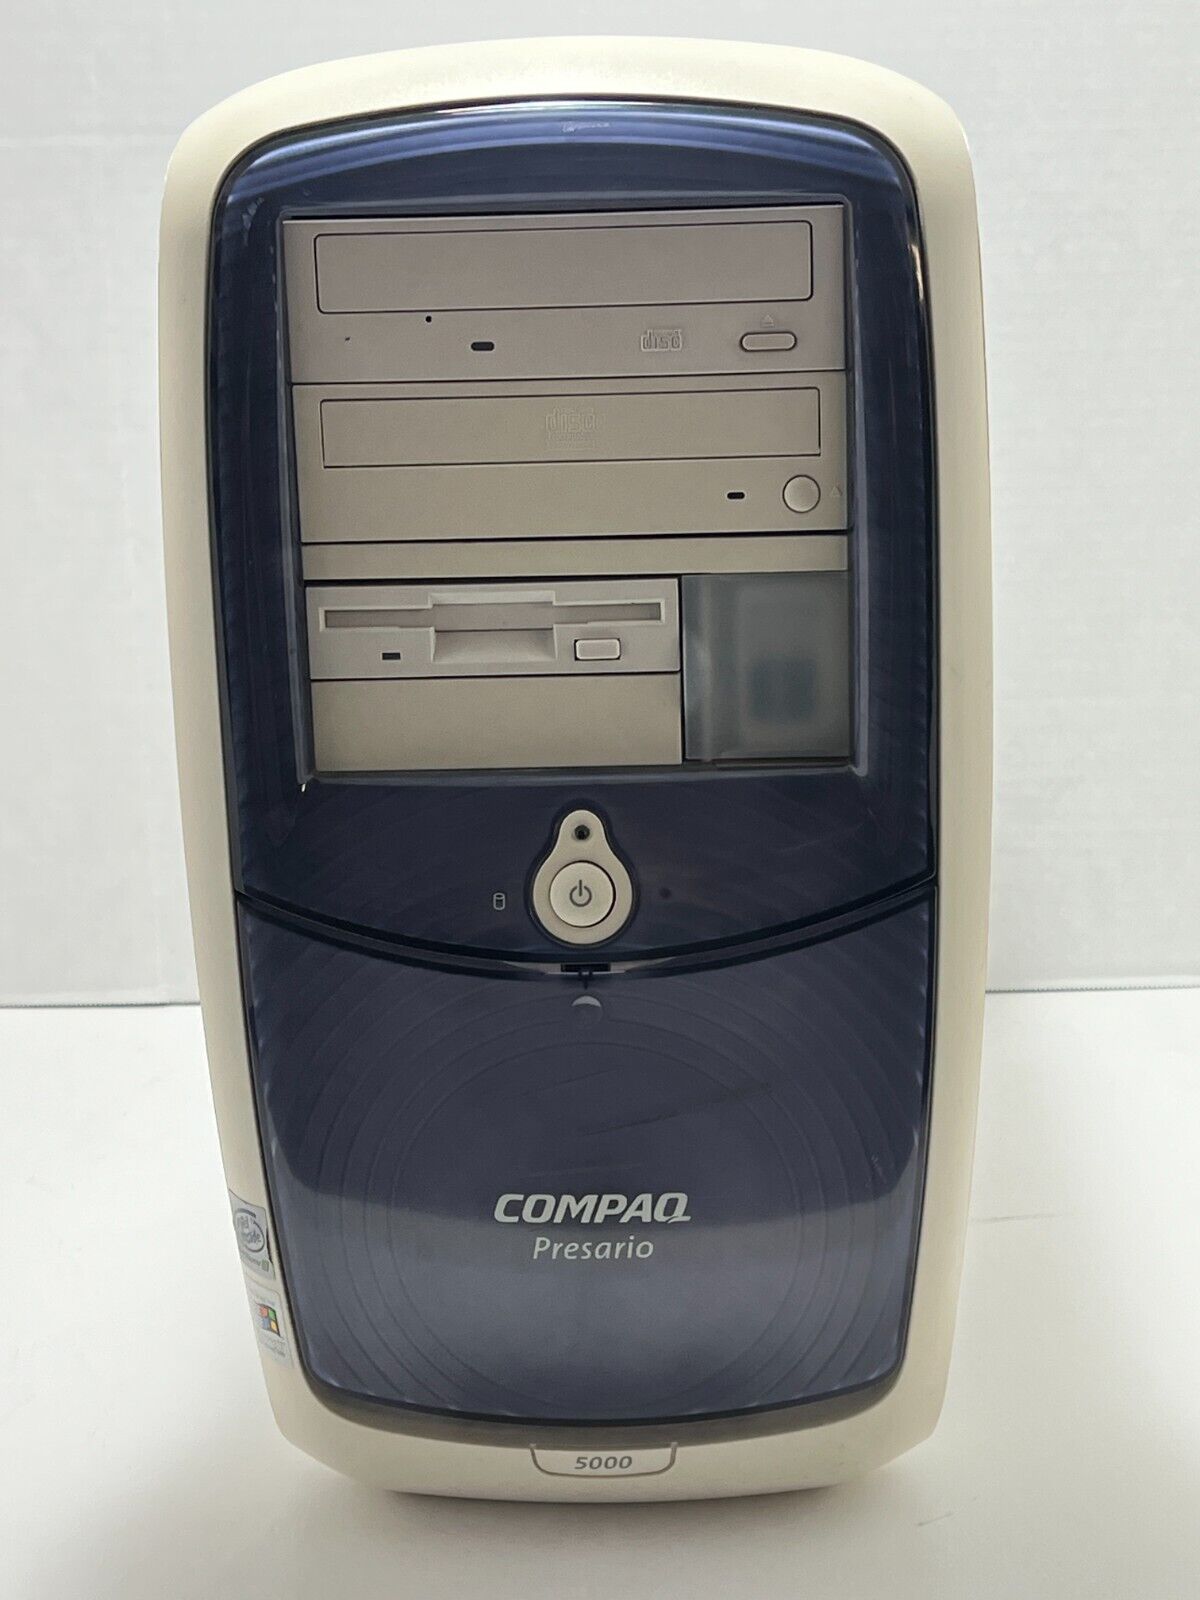 Compaq Presario 5000, Intel Pentium III, Windows ME, CD-RW, DVD-ROM, Floppy